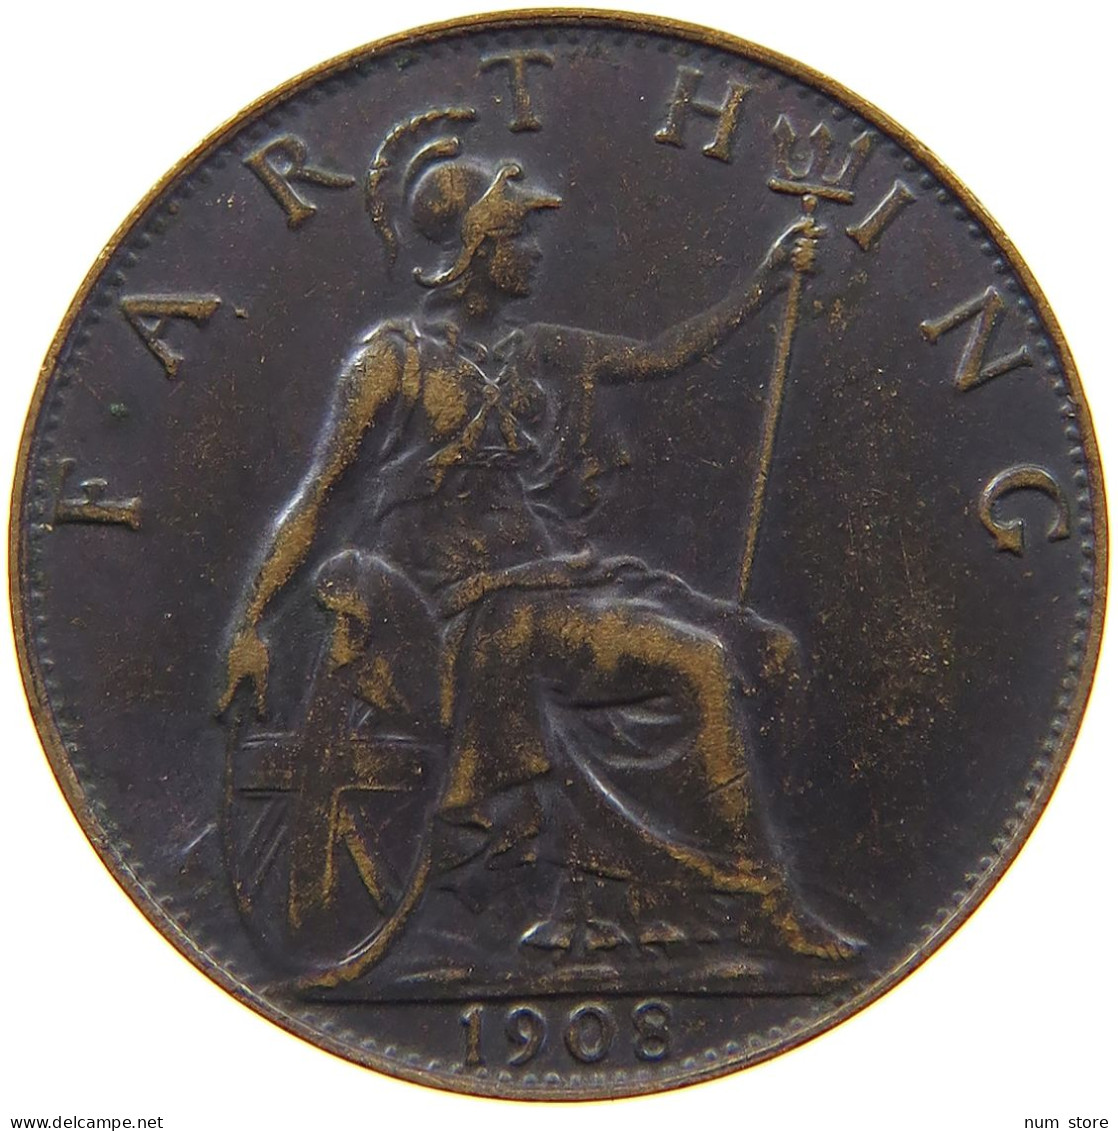 GREAT BRITAIN FARTHING 1908 Edward VII., 1901 - 1910 #c062 0089 - B. 1 Farthing